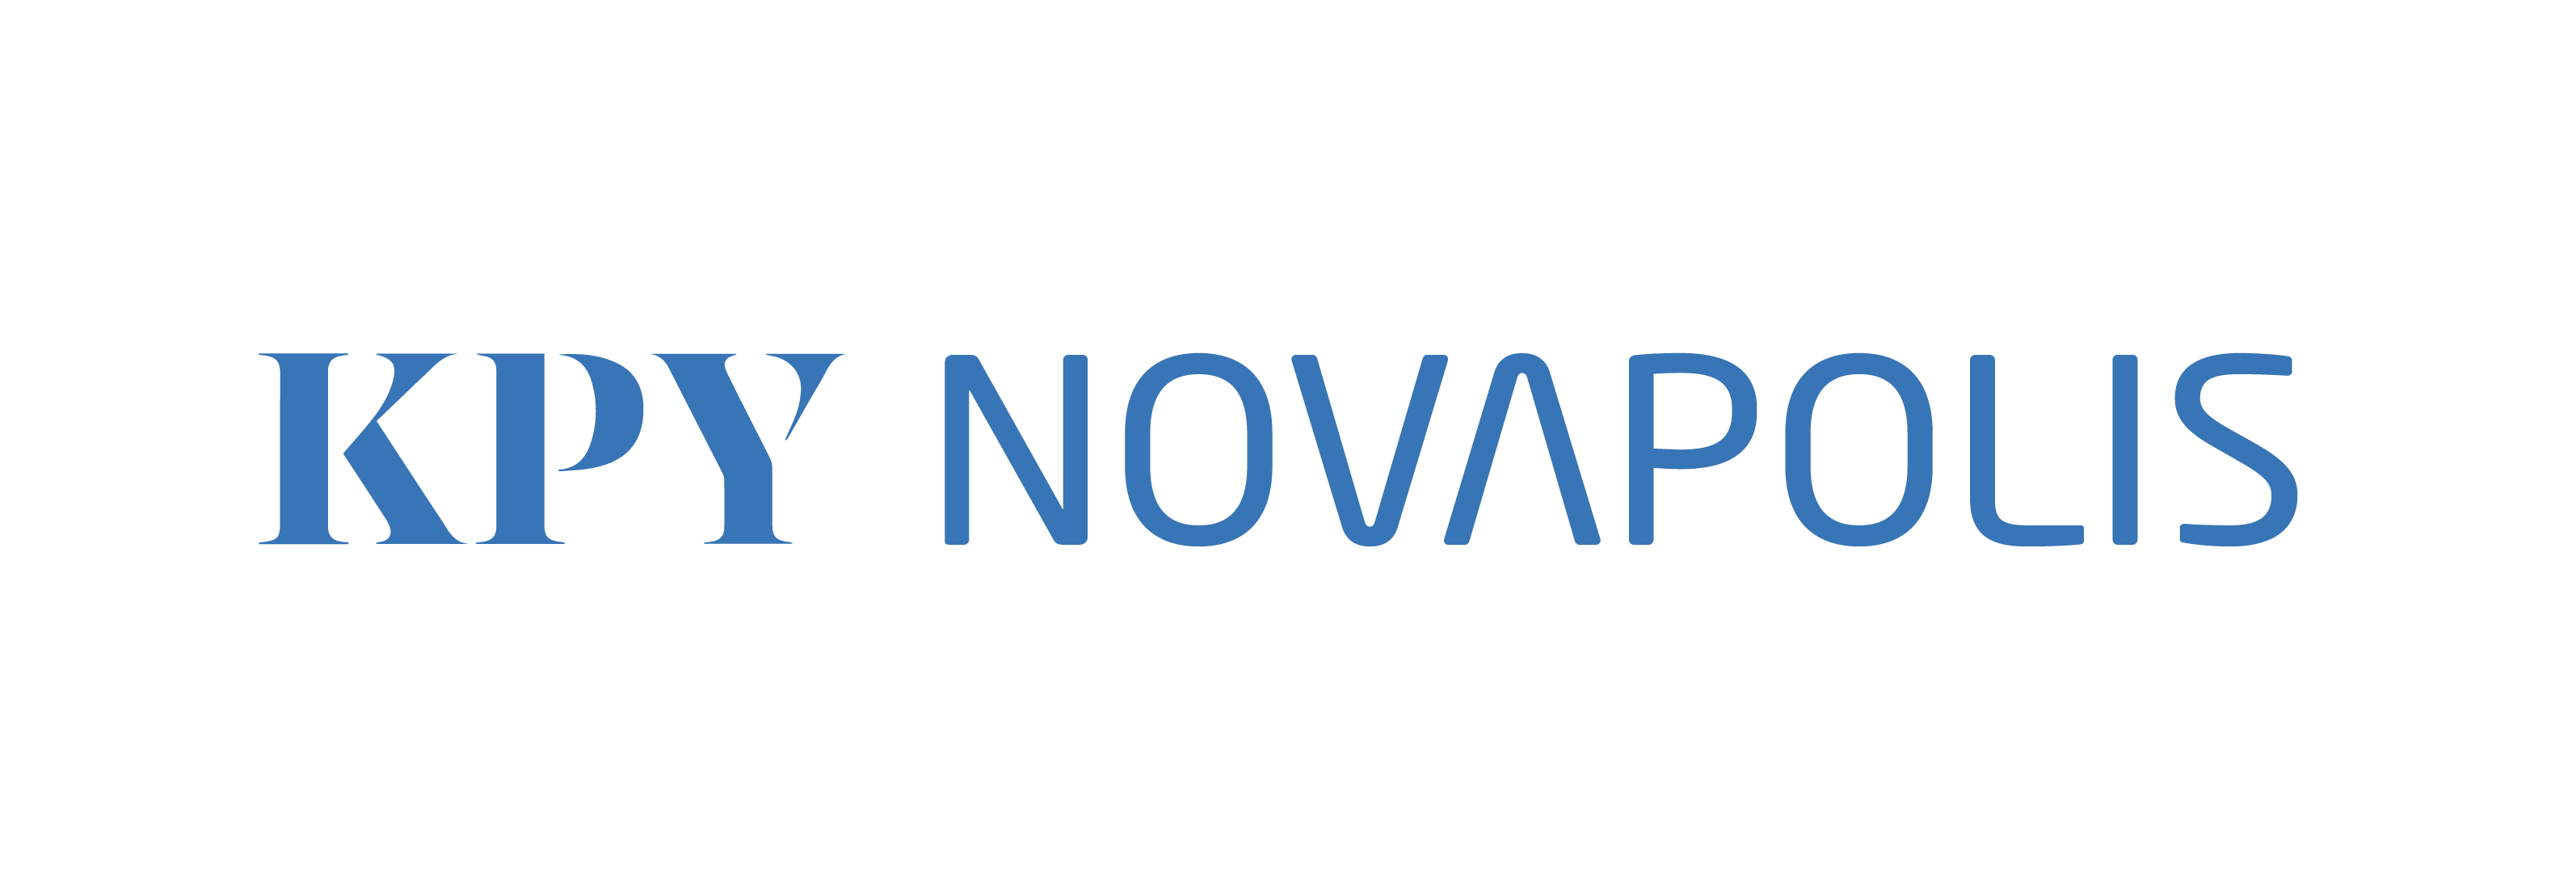 Tekstilogo, jossa lukee sinisellä KPY Novapolis.